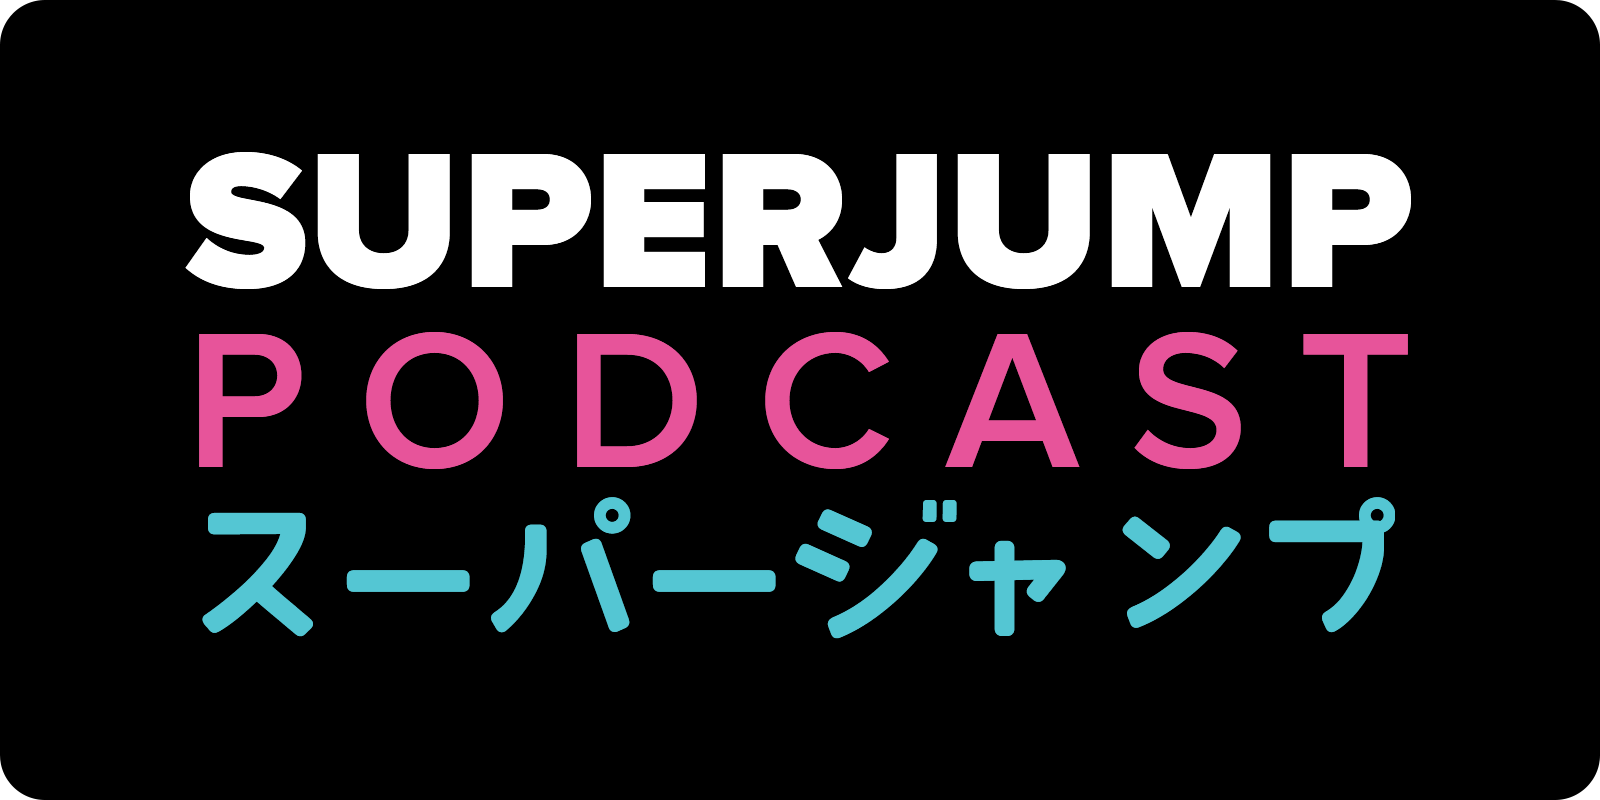 SUPERJUMP Podcast: Video Game Rhythm